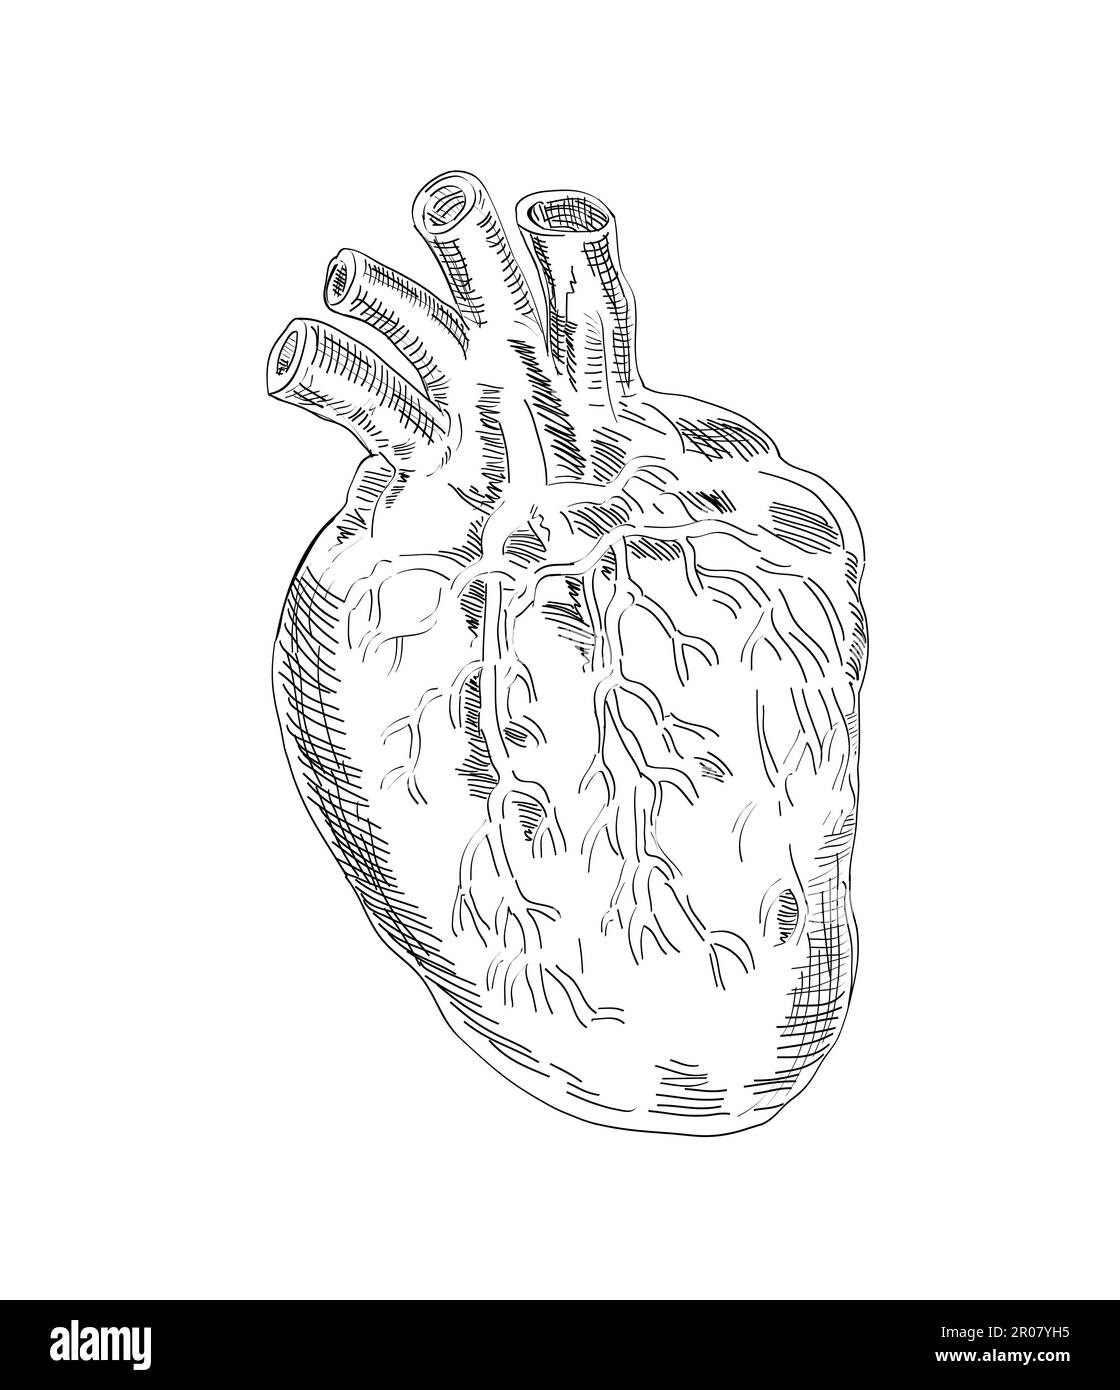 Zeichnungsstil Darstellung der Herzanatomie auf isoliertem Hintergrund in Schwarzweiß. Stockfoto